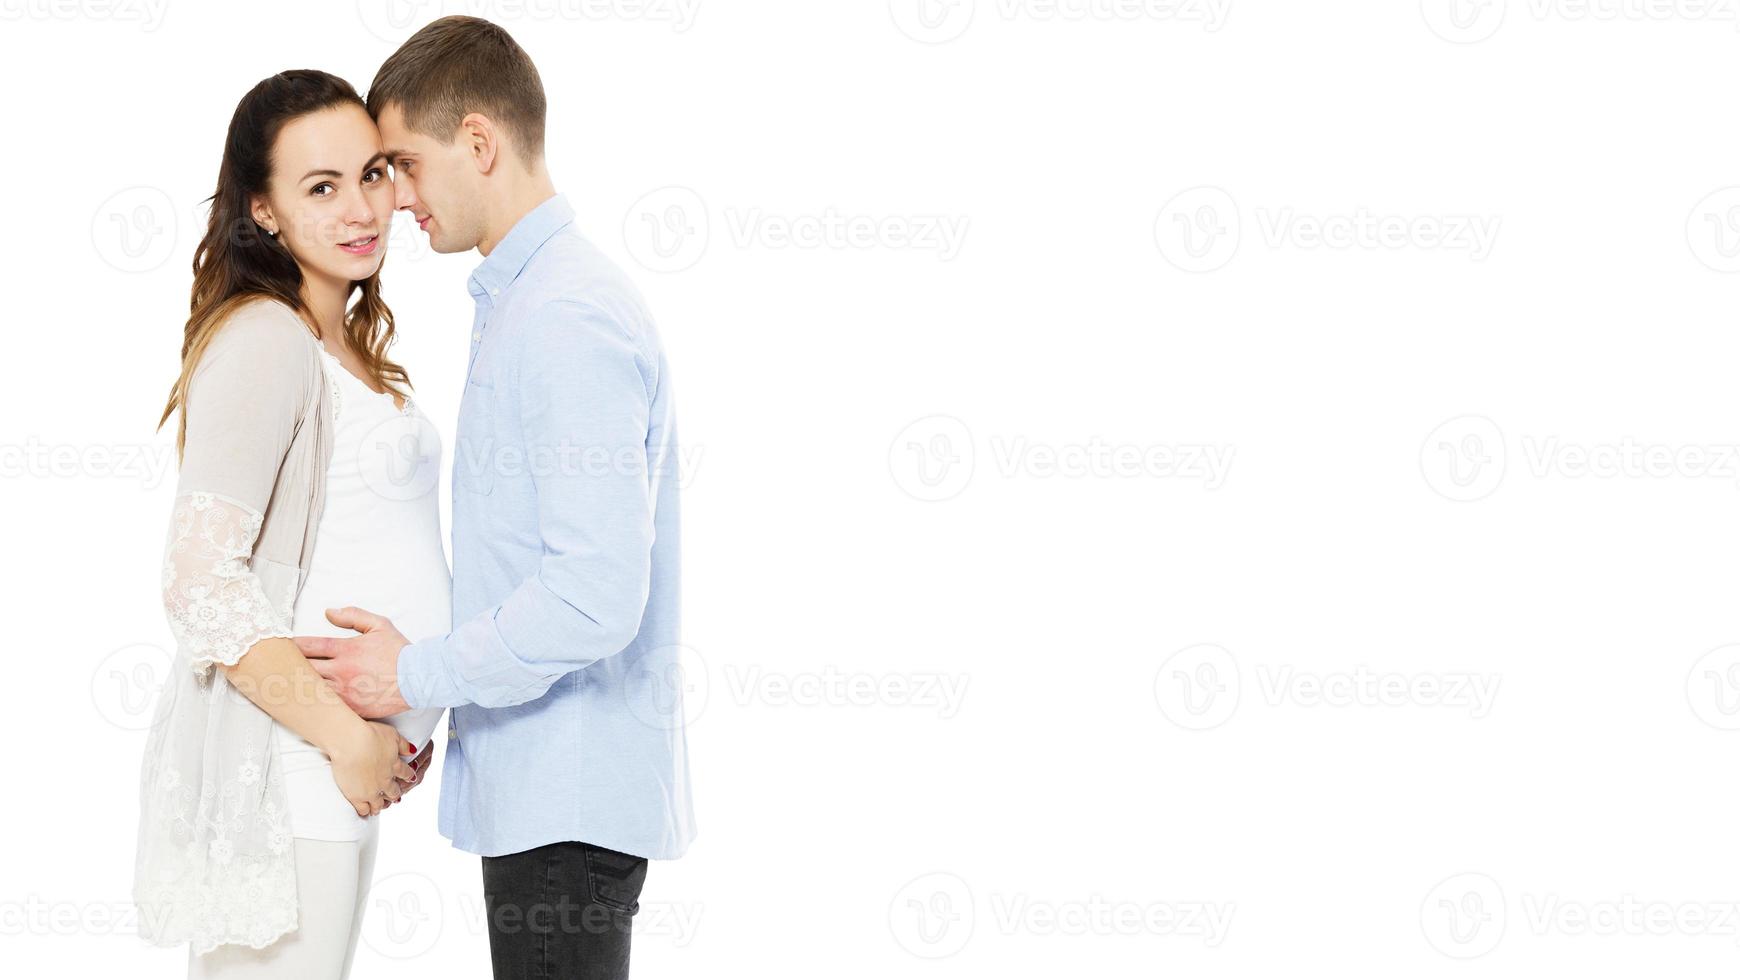 jeune couple caucasien, mère enceinte et père heureux sur fond blanc, bébé né photo